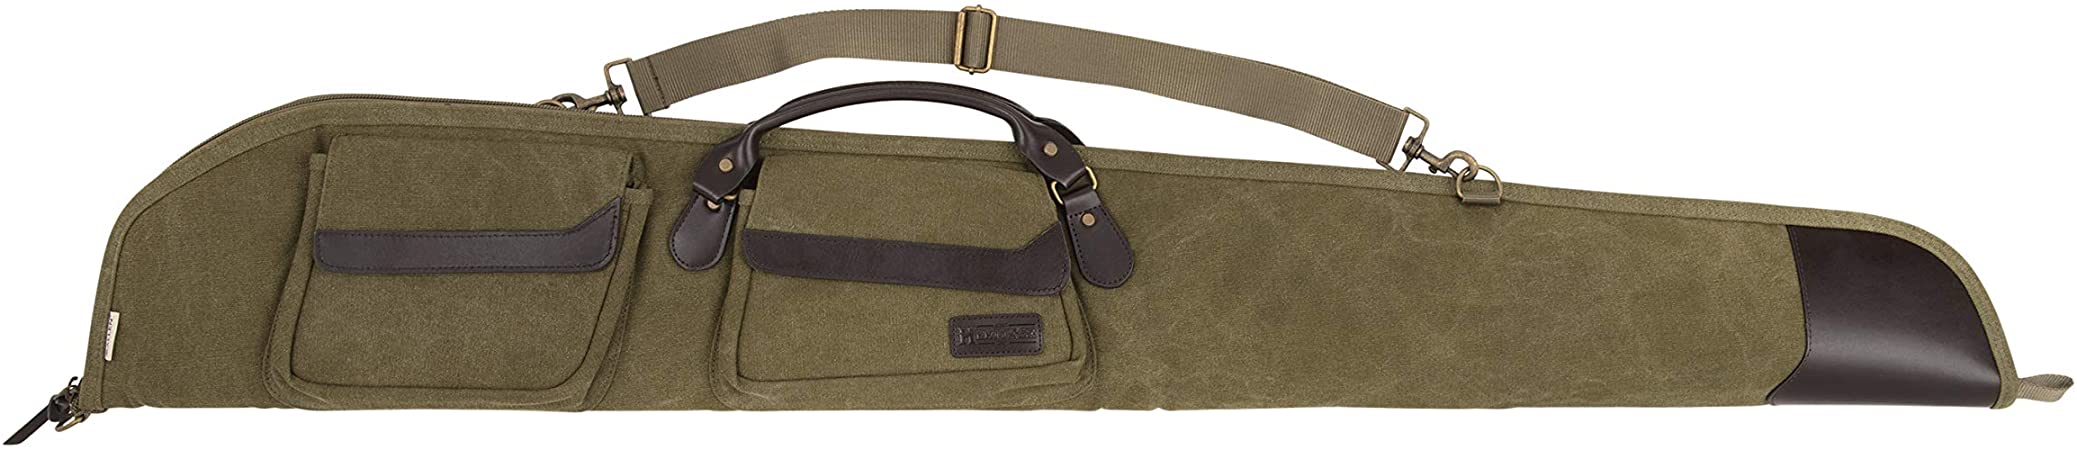 Allen Company - North Platte Heritage Series - Vintage Set - Rifle Case/Shotgun Case/Takedown Case/Backpack/Range Bag/Gun Sling (36/48 / 52 inches) - Olive Green